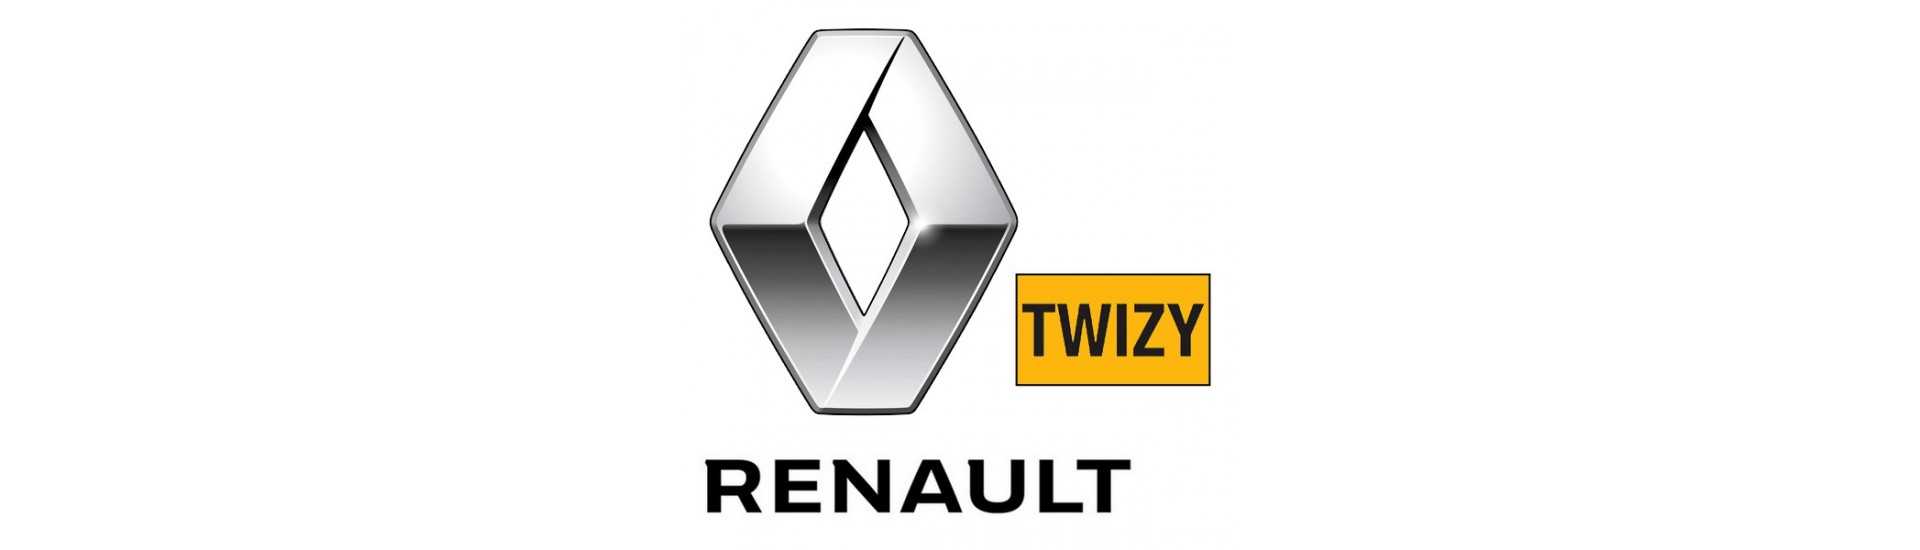 Türstopp zum besten Preis für Auto ohne Lizenz Renault Twizy